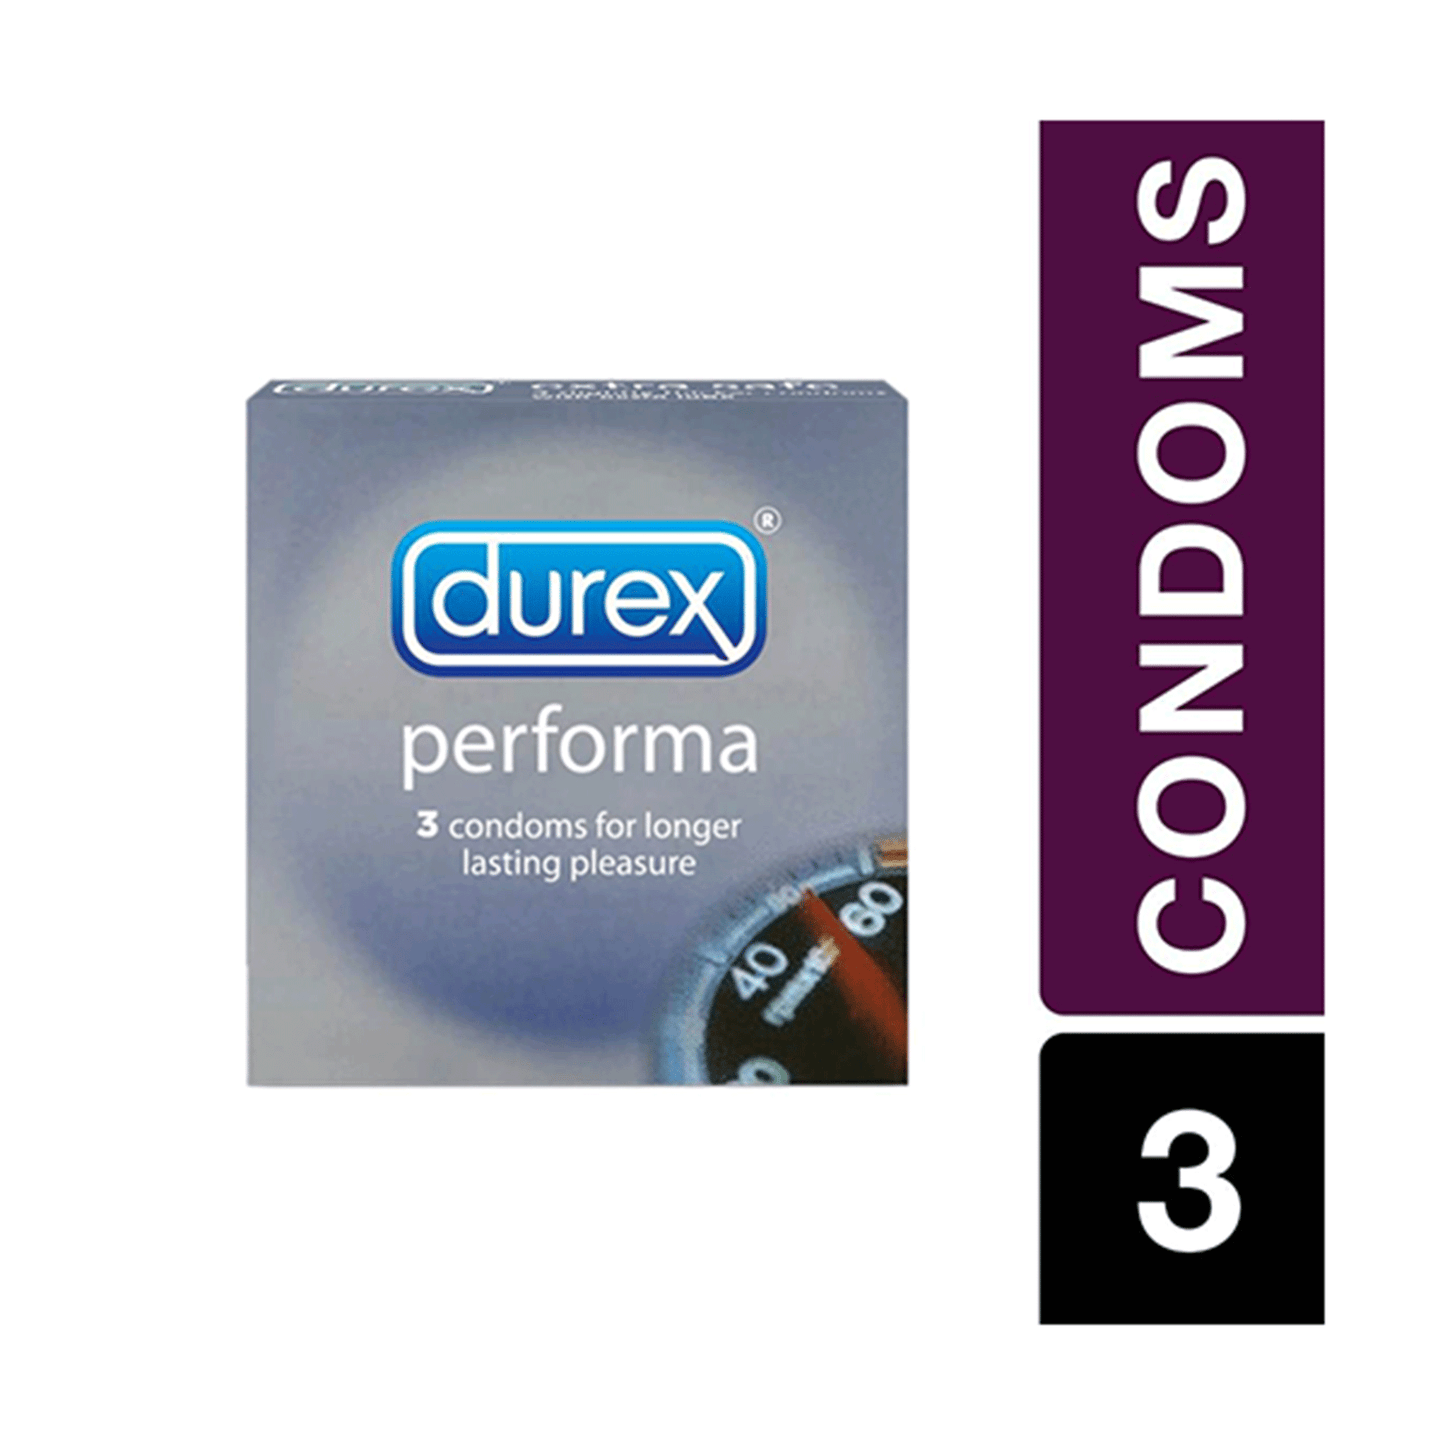 DUREX, 3 CONDOMS